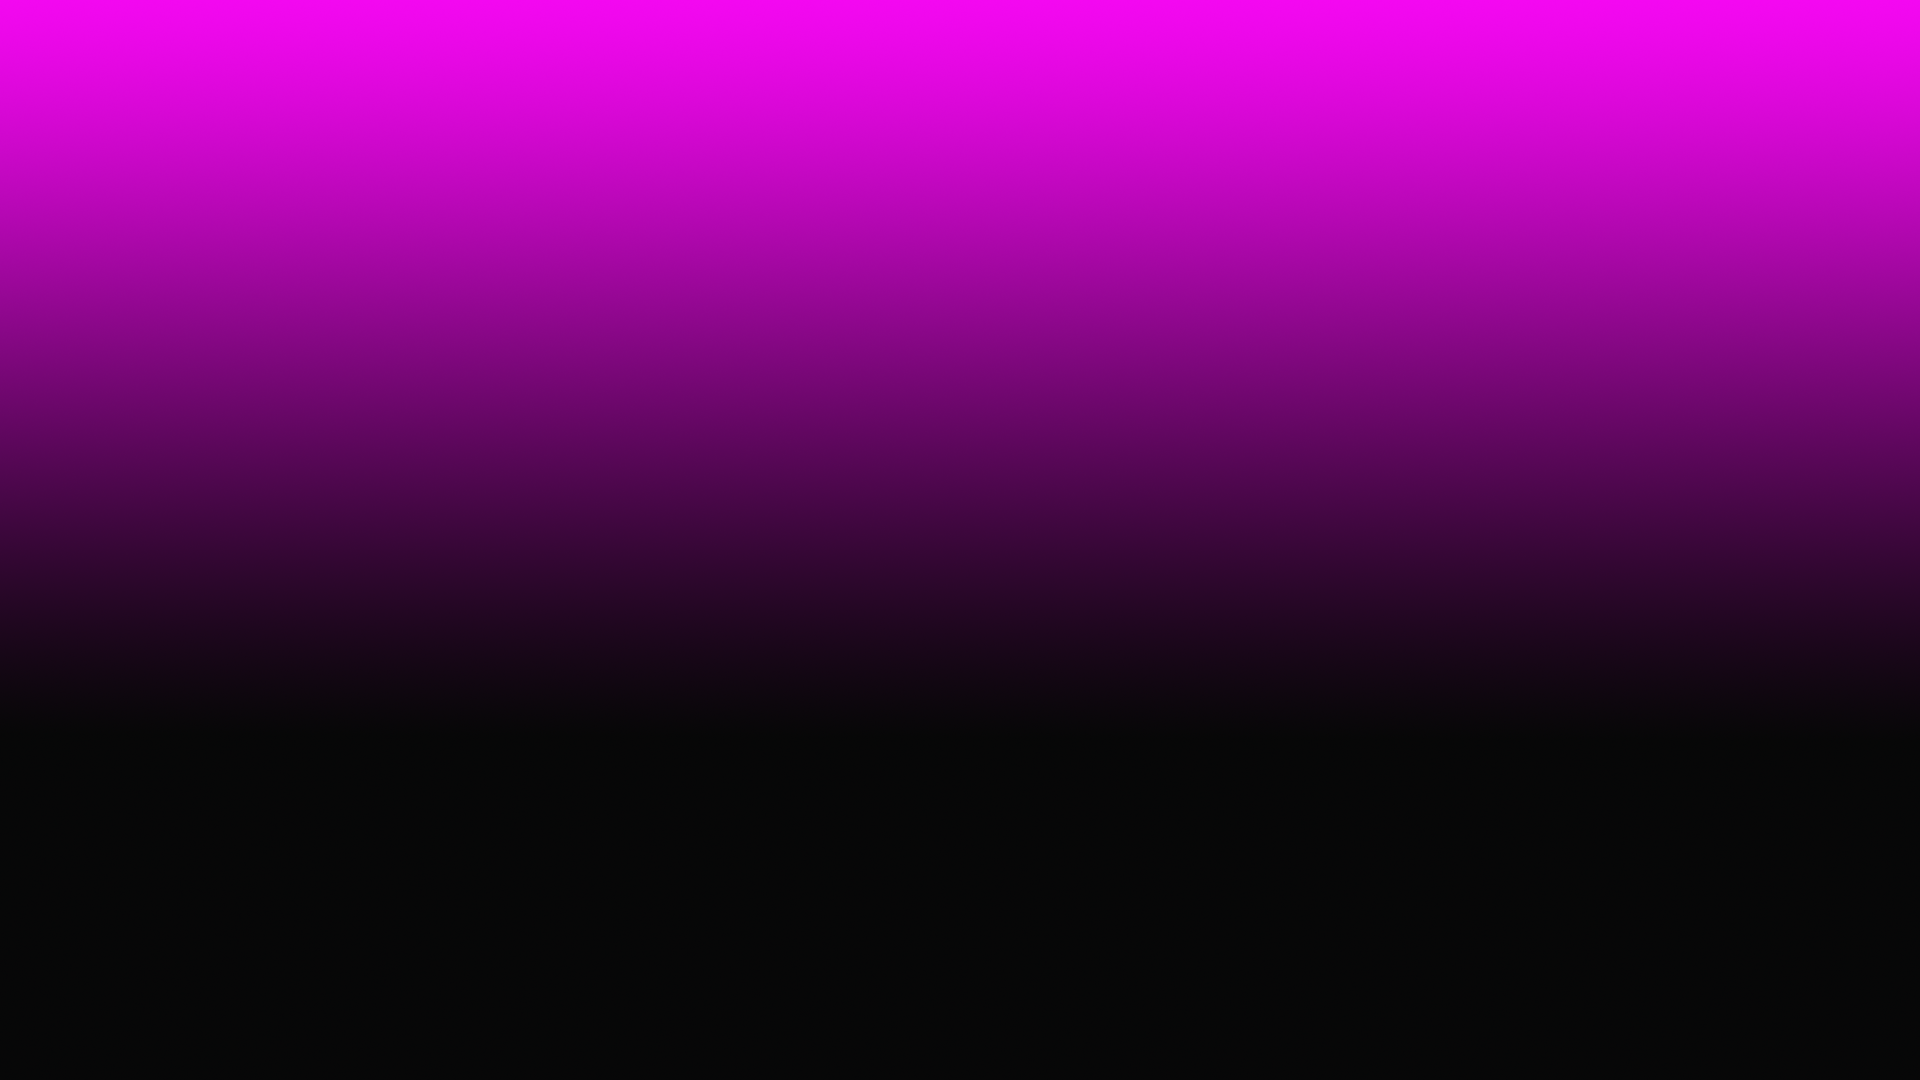 Pink And Black Gradient Desktop Wallpaper